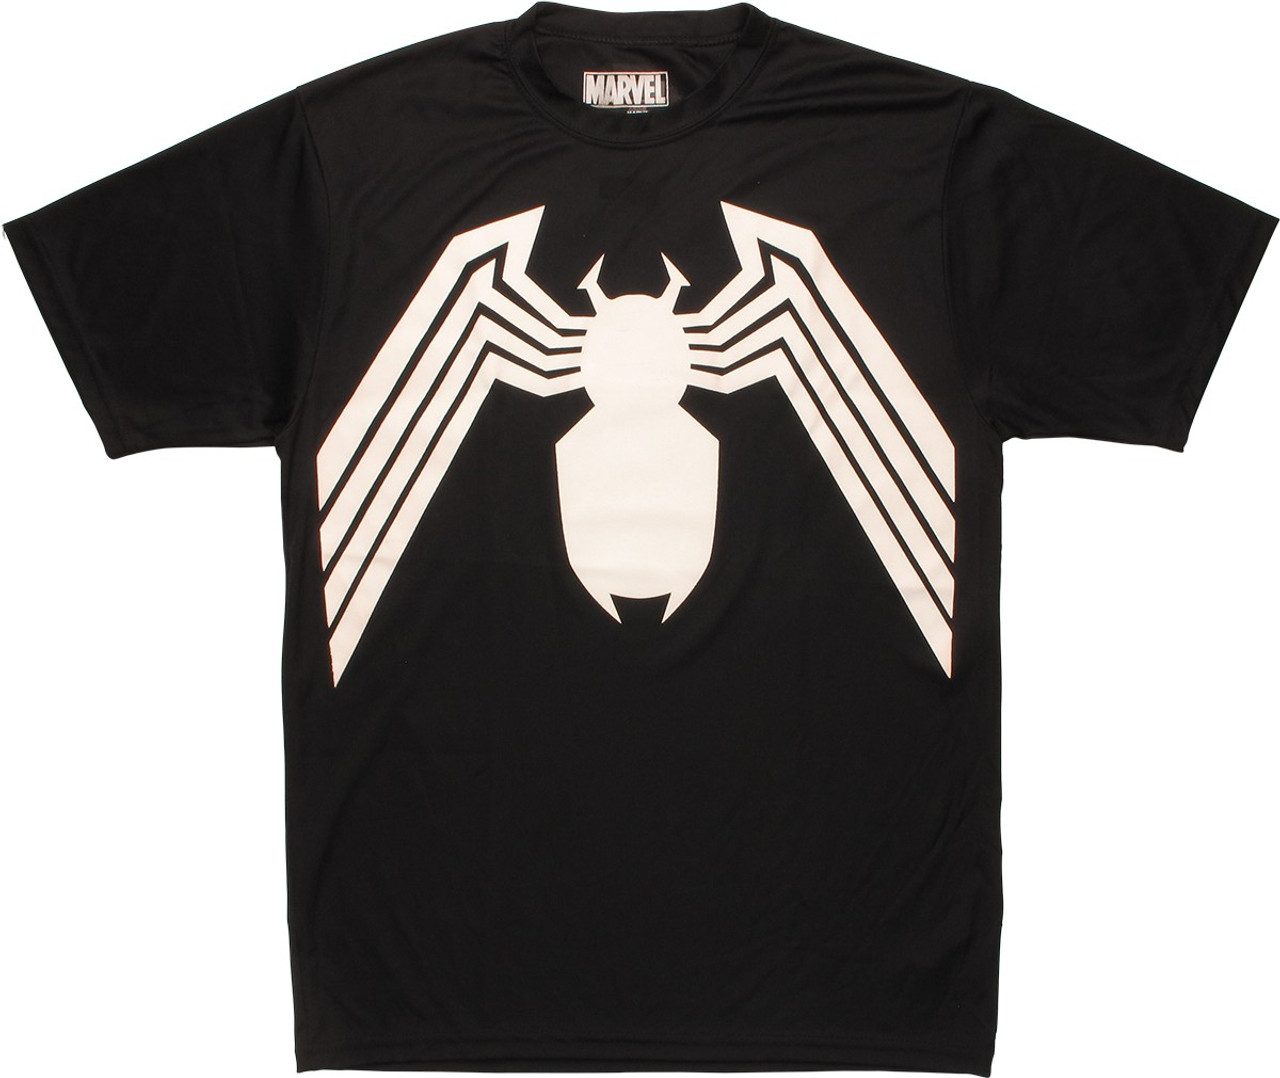 Officially Licensed Marvel Comics Venom Baseball 3/4 Sleeve T-Shirt S ...